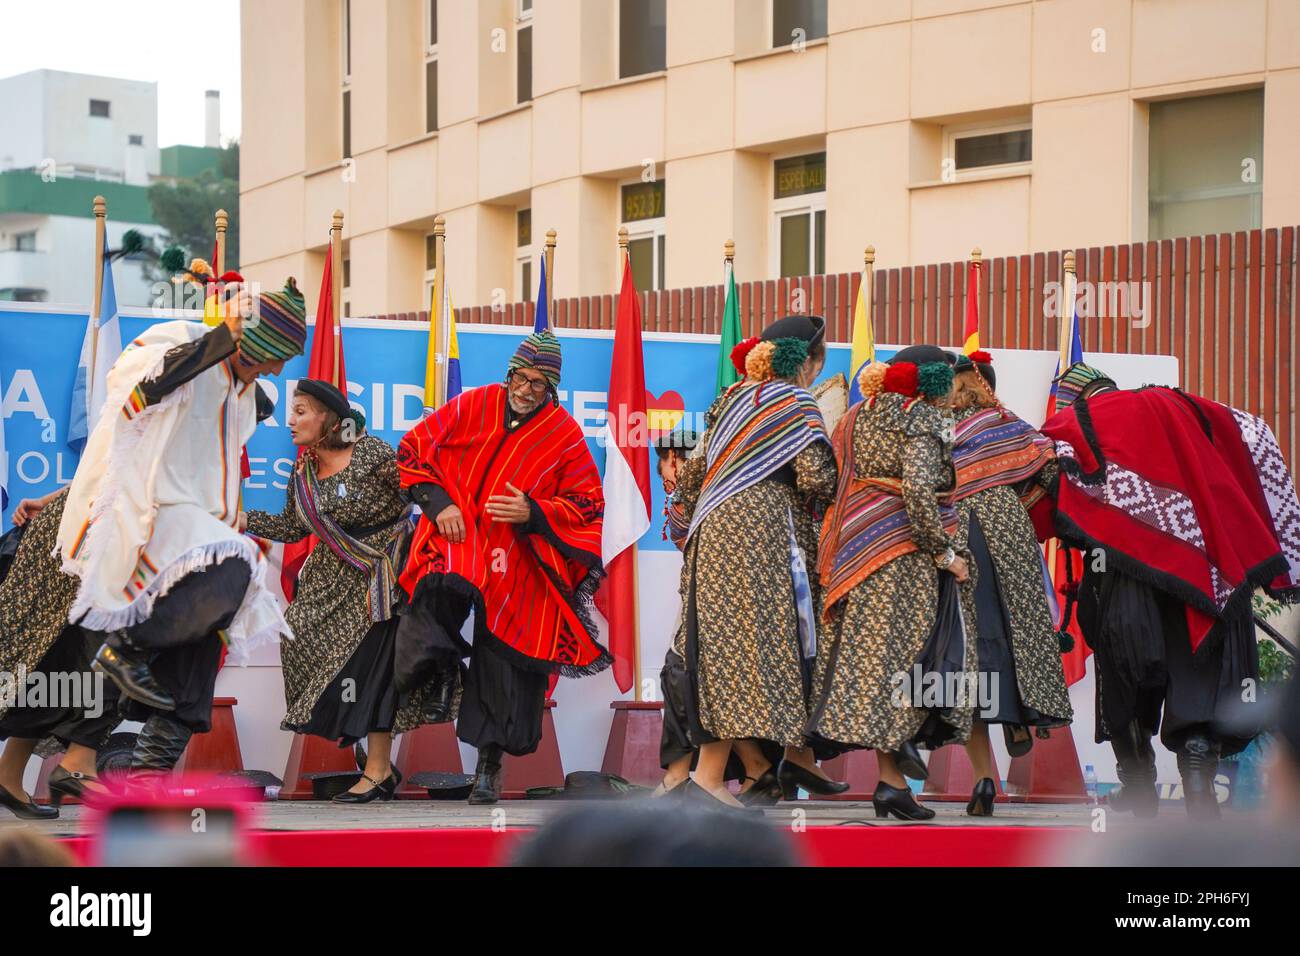 Torremolinos. Tanzgruppe, die traditionellen südamerikanischen Tanz aufführt, Torremolinos, Dia del Residente, multikulturelle Veranstaltung, Costa del Sol, Spanien. Stockfoto